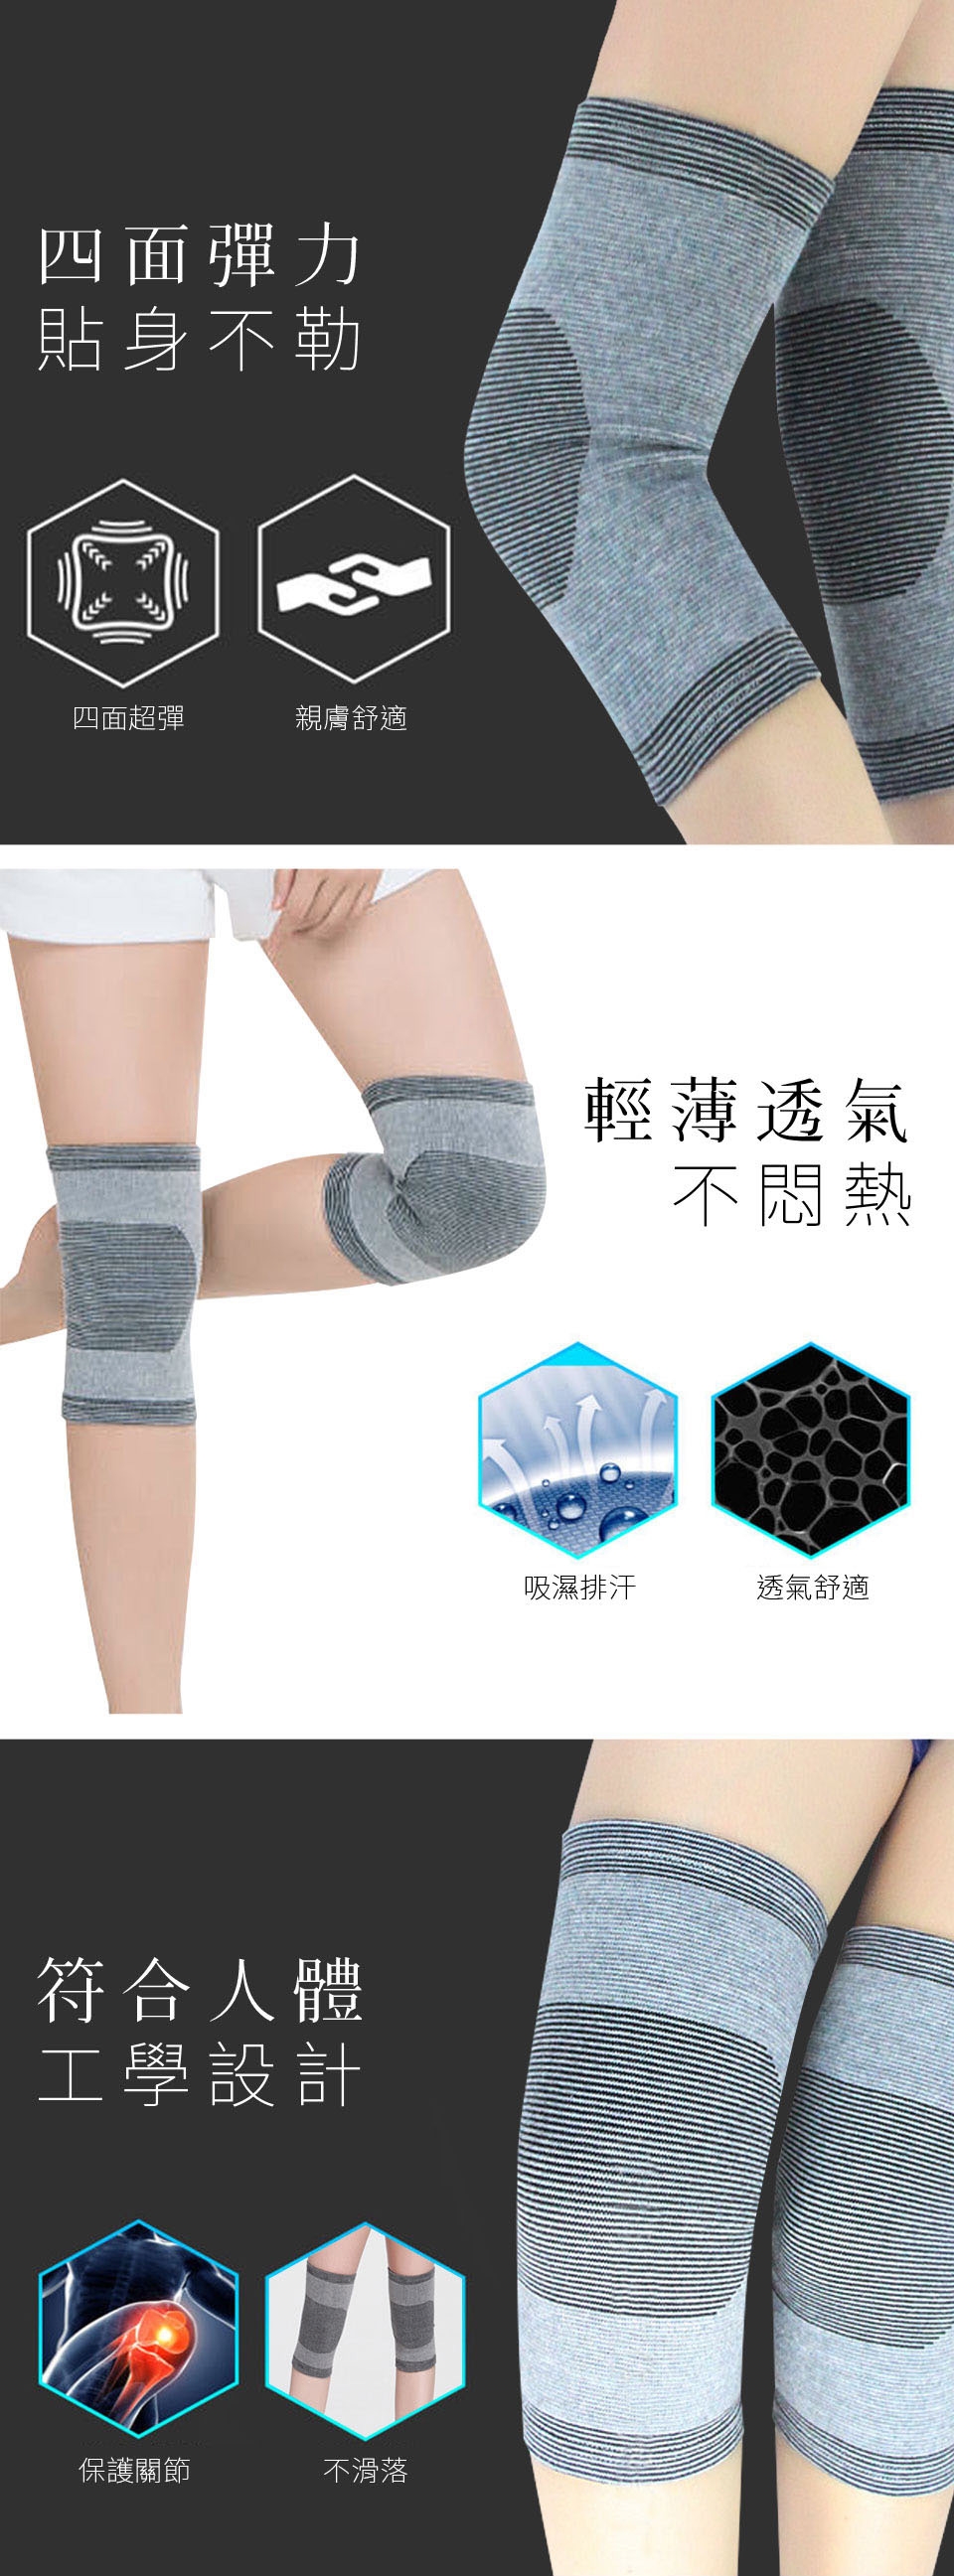 【Yi-sheng】全方位運動護具組(CC灰色護膝+護腕+護踝)